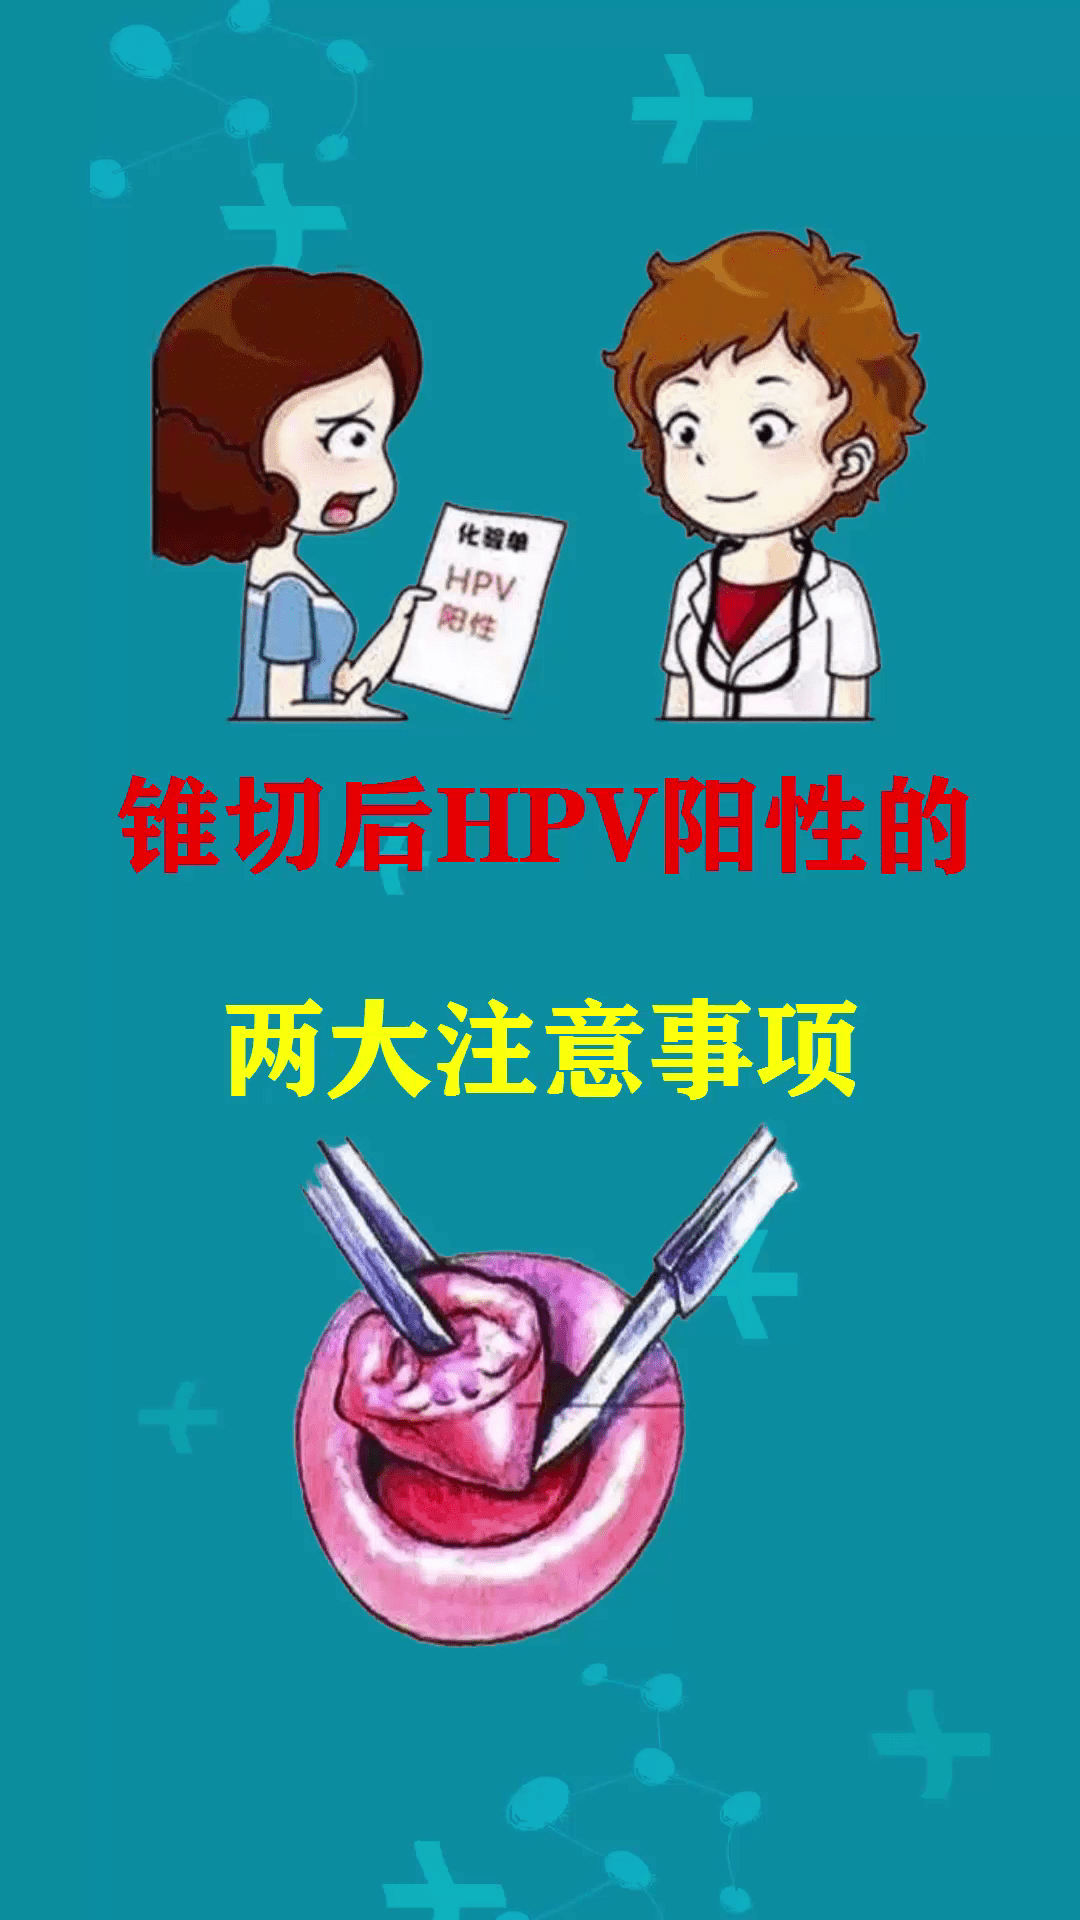 [项目展示]规范化子宫颈锥切术（LEEPCKC）和随访管理的应用 中国民族卫生协会培训部